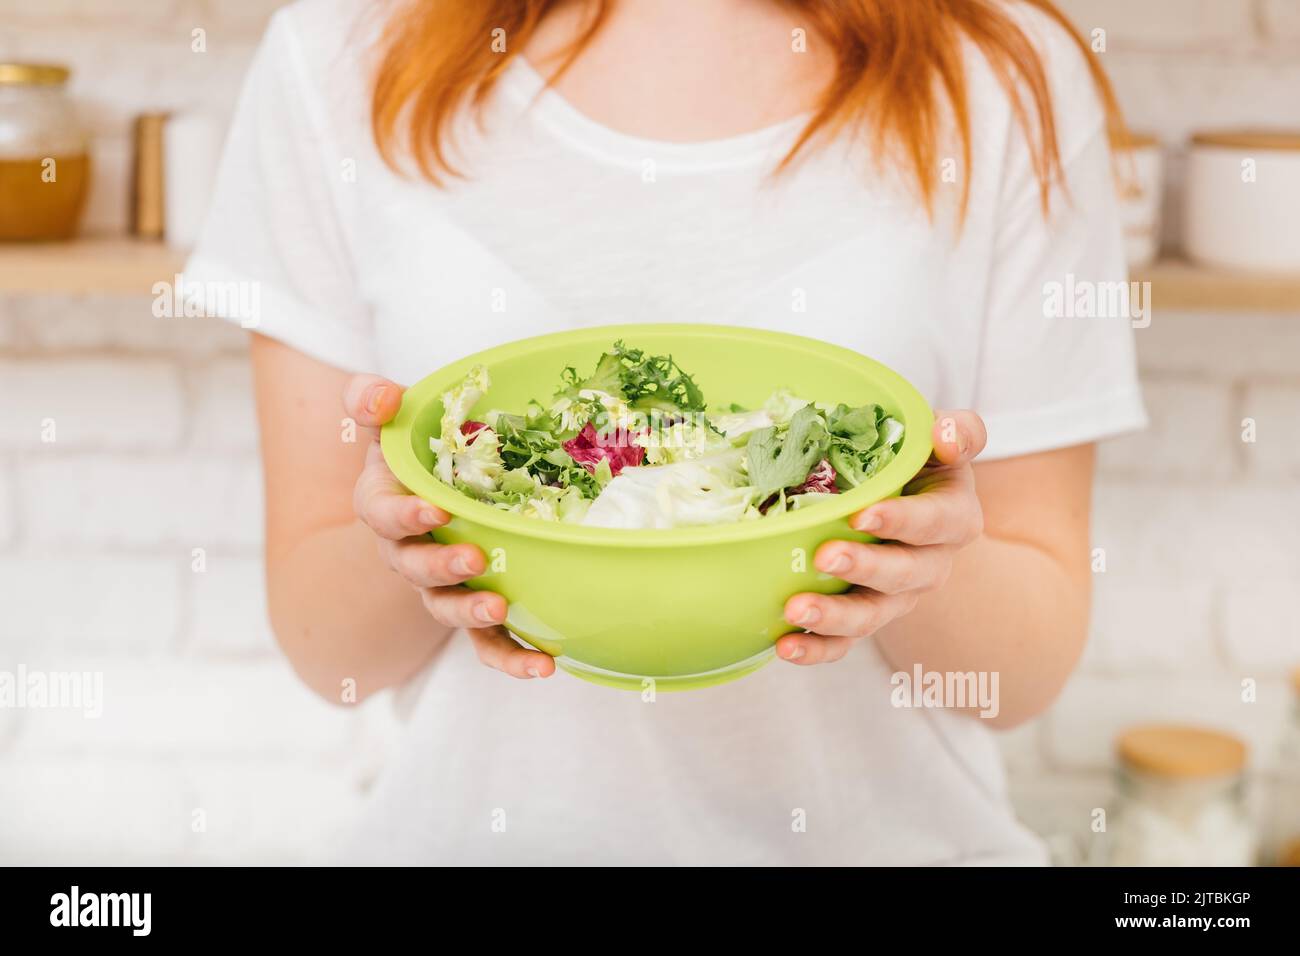 sana dieta equilibrata ingrediente misto foglie insalata Foto Stock